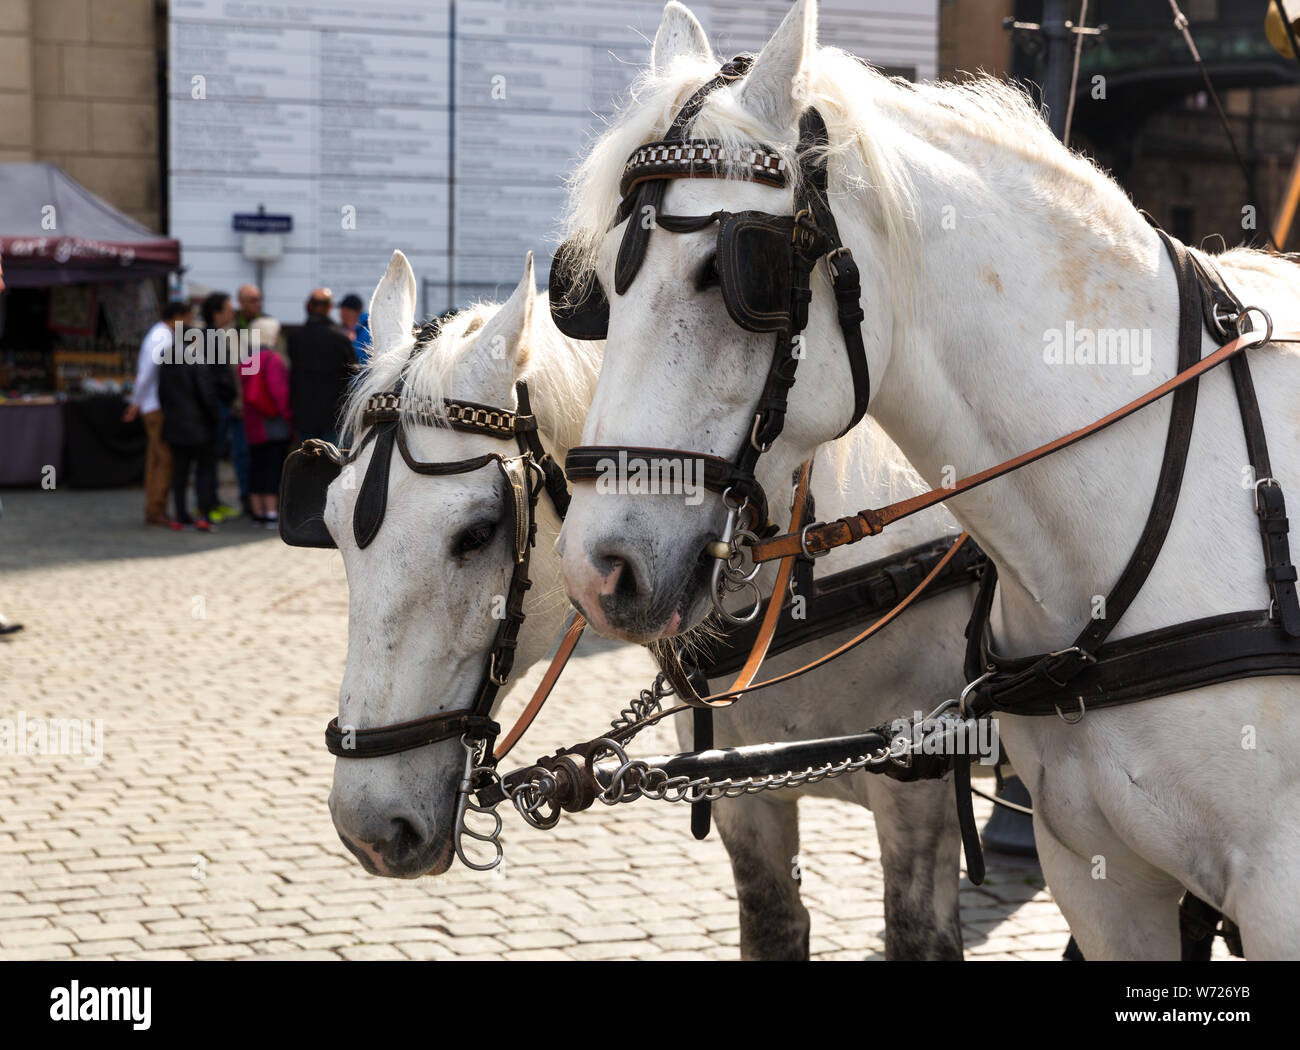 Tour horses in old European town Stock Photo